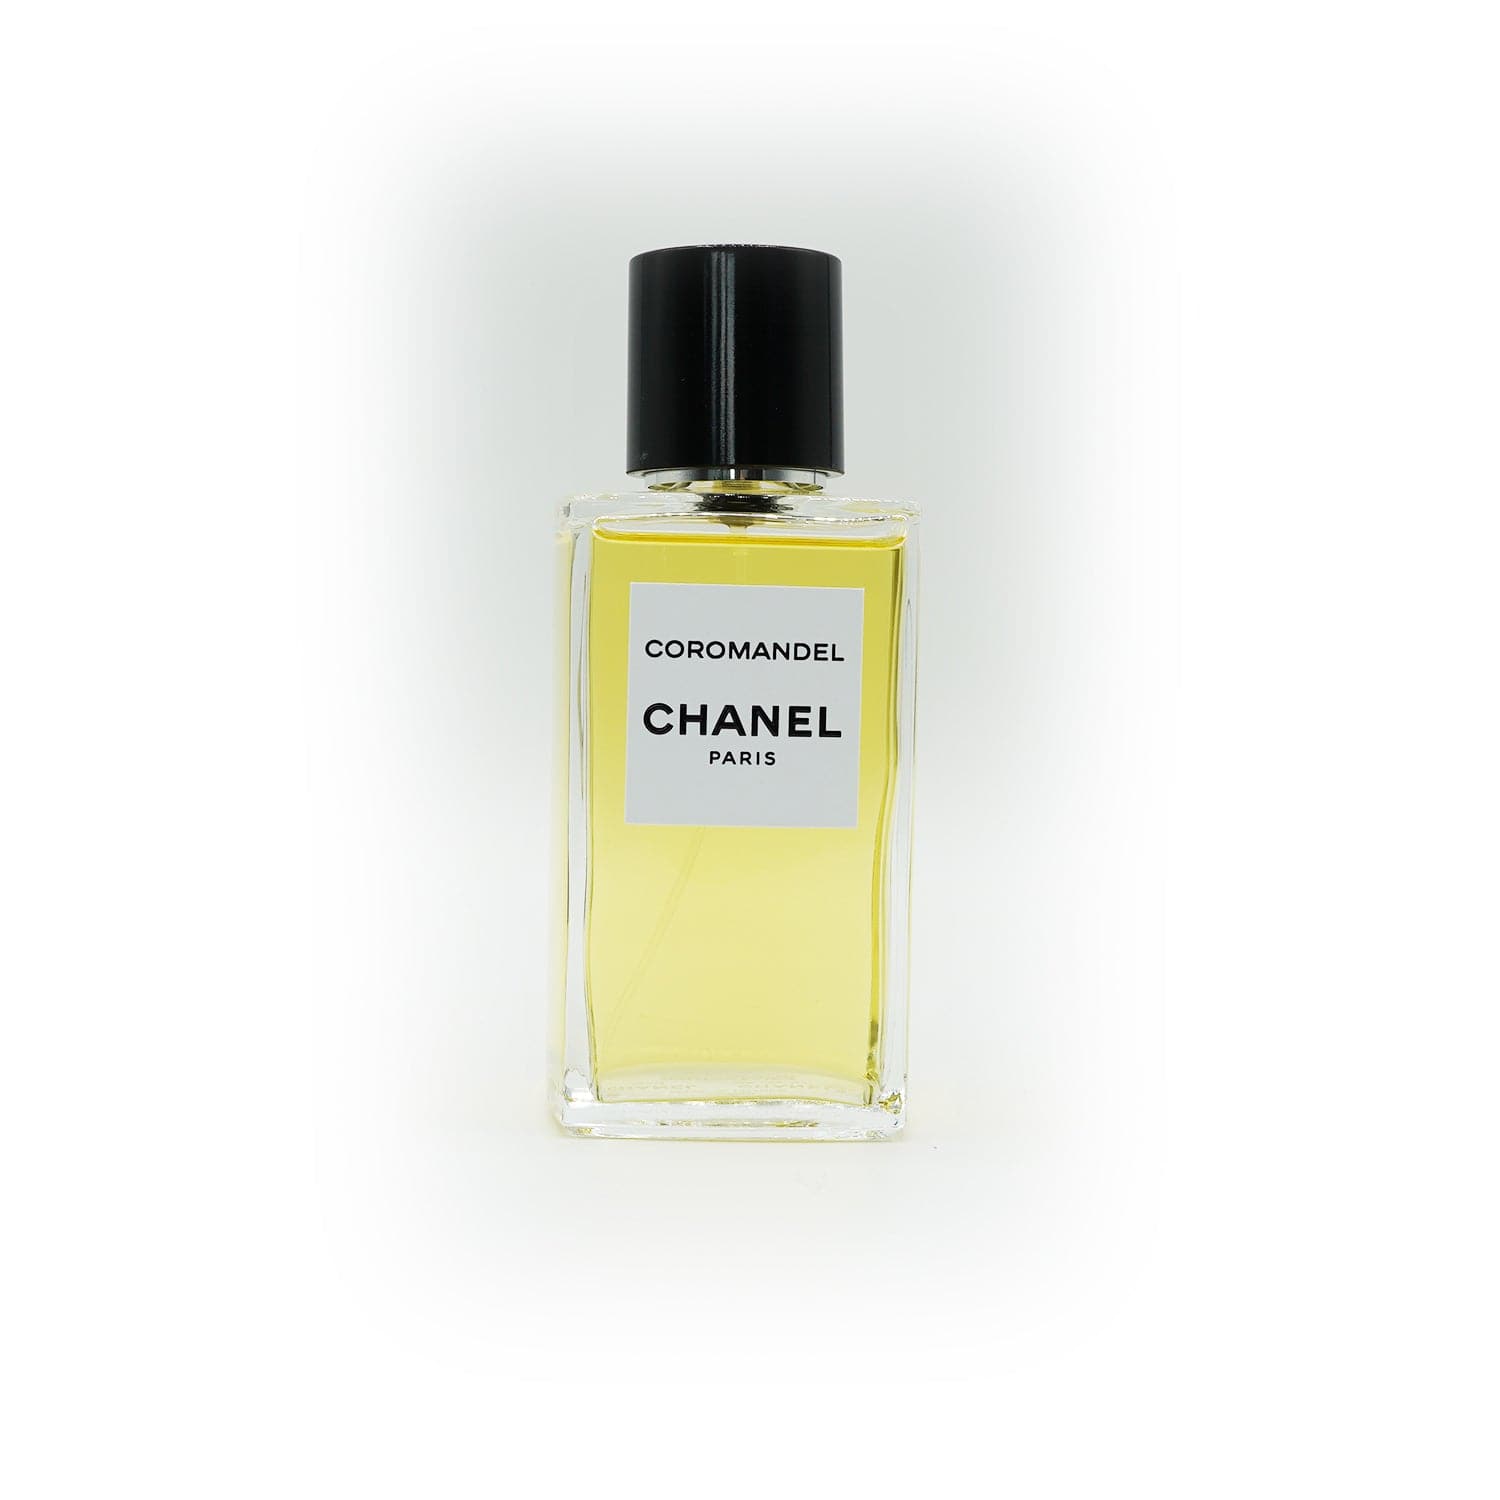 Les Exclusifs de Chanel | Coromandel Abfüllung